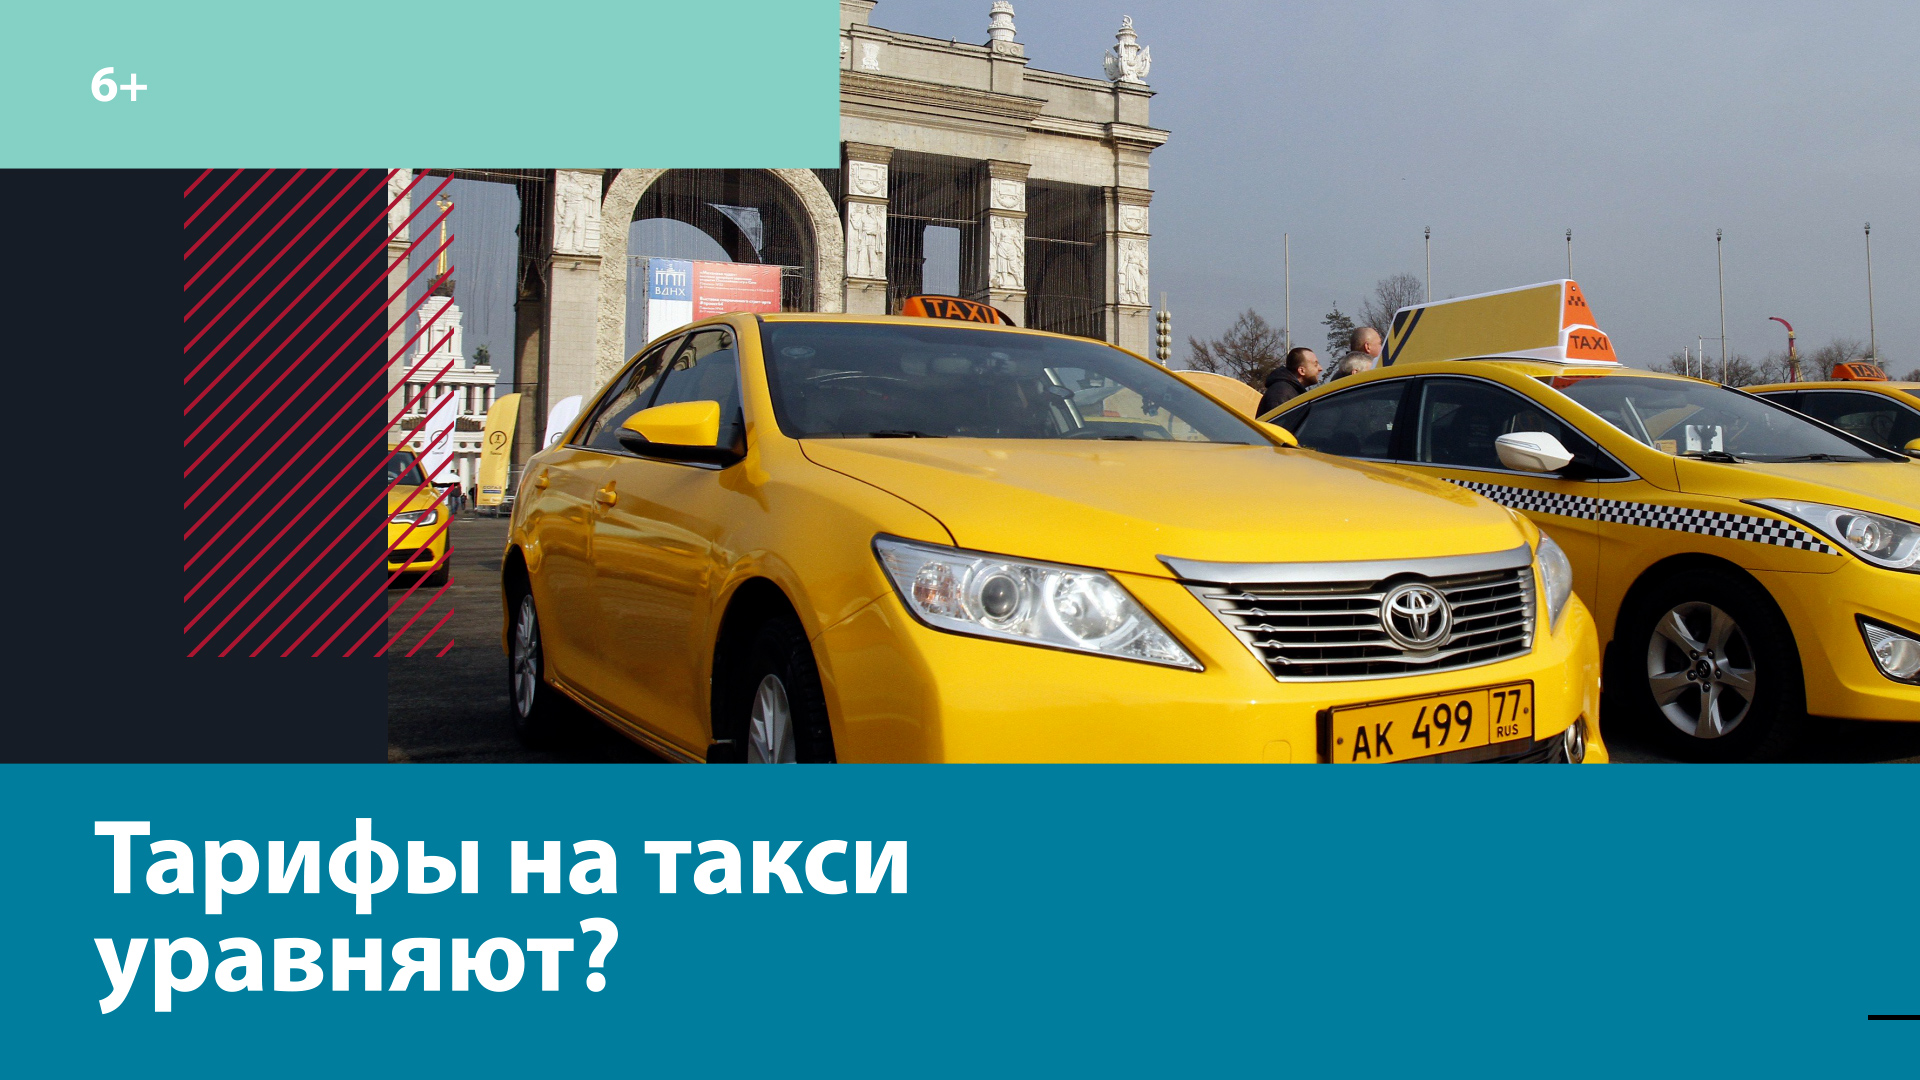 Цены на такси предложили сделать стандартными — Москва FM